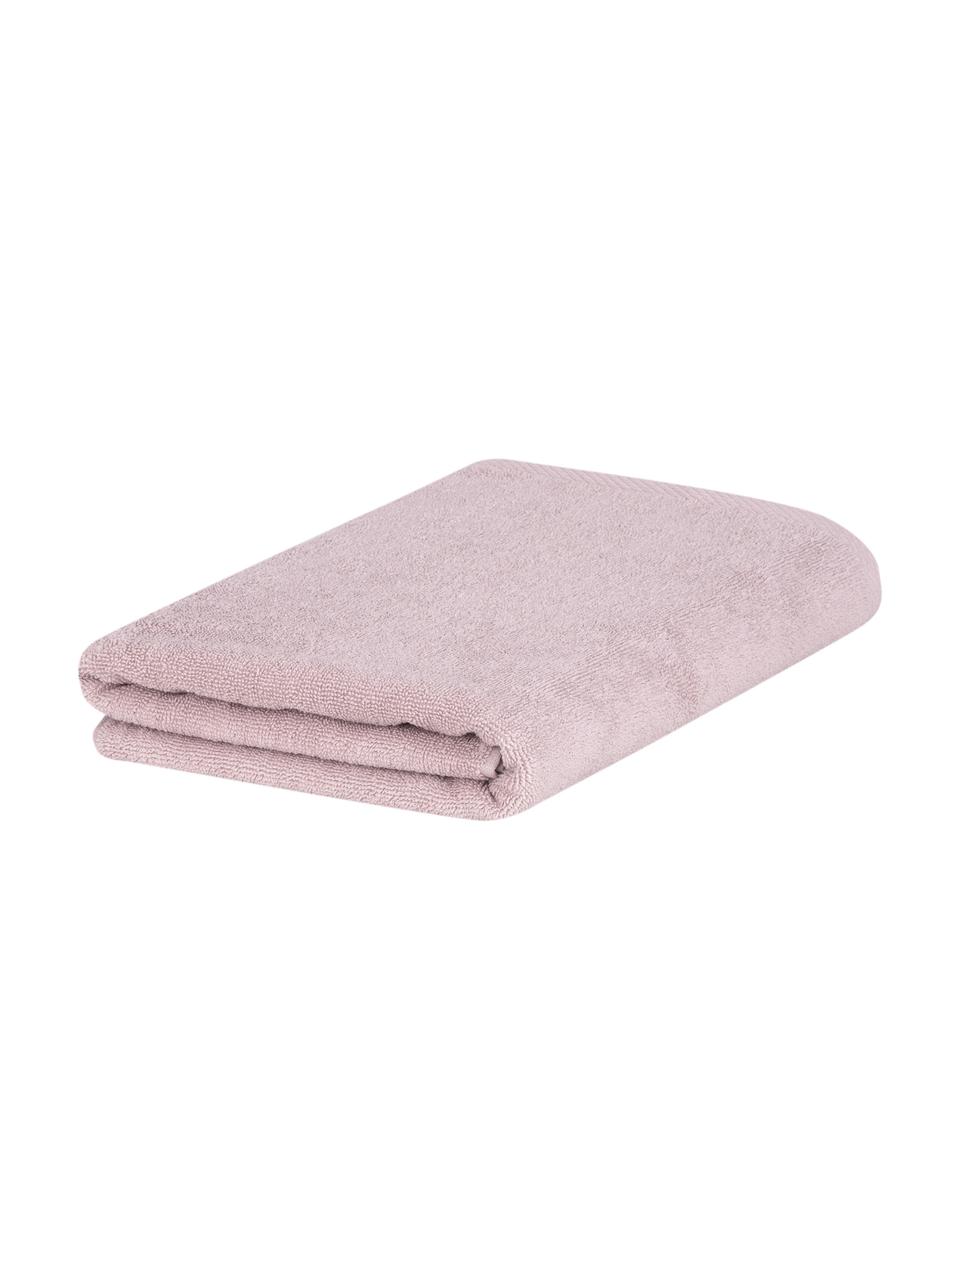 Eenkleurige handdoek Comfort, verschillende formaten, Oudroze, Handdoek, B 50 x L 100 cm, 2 stuks